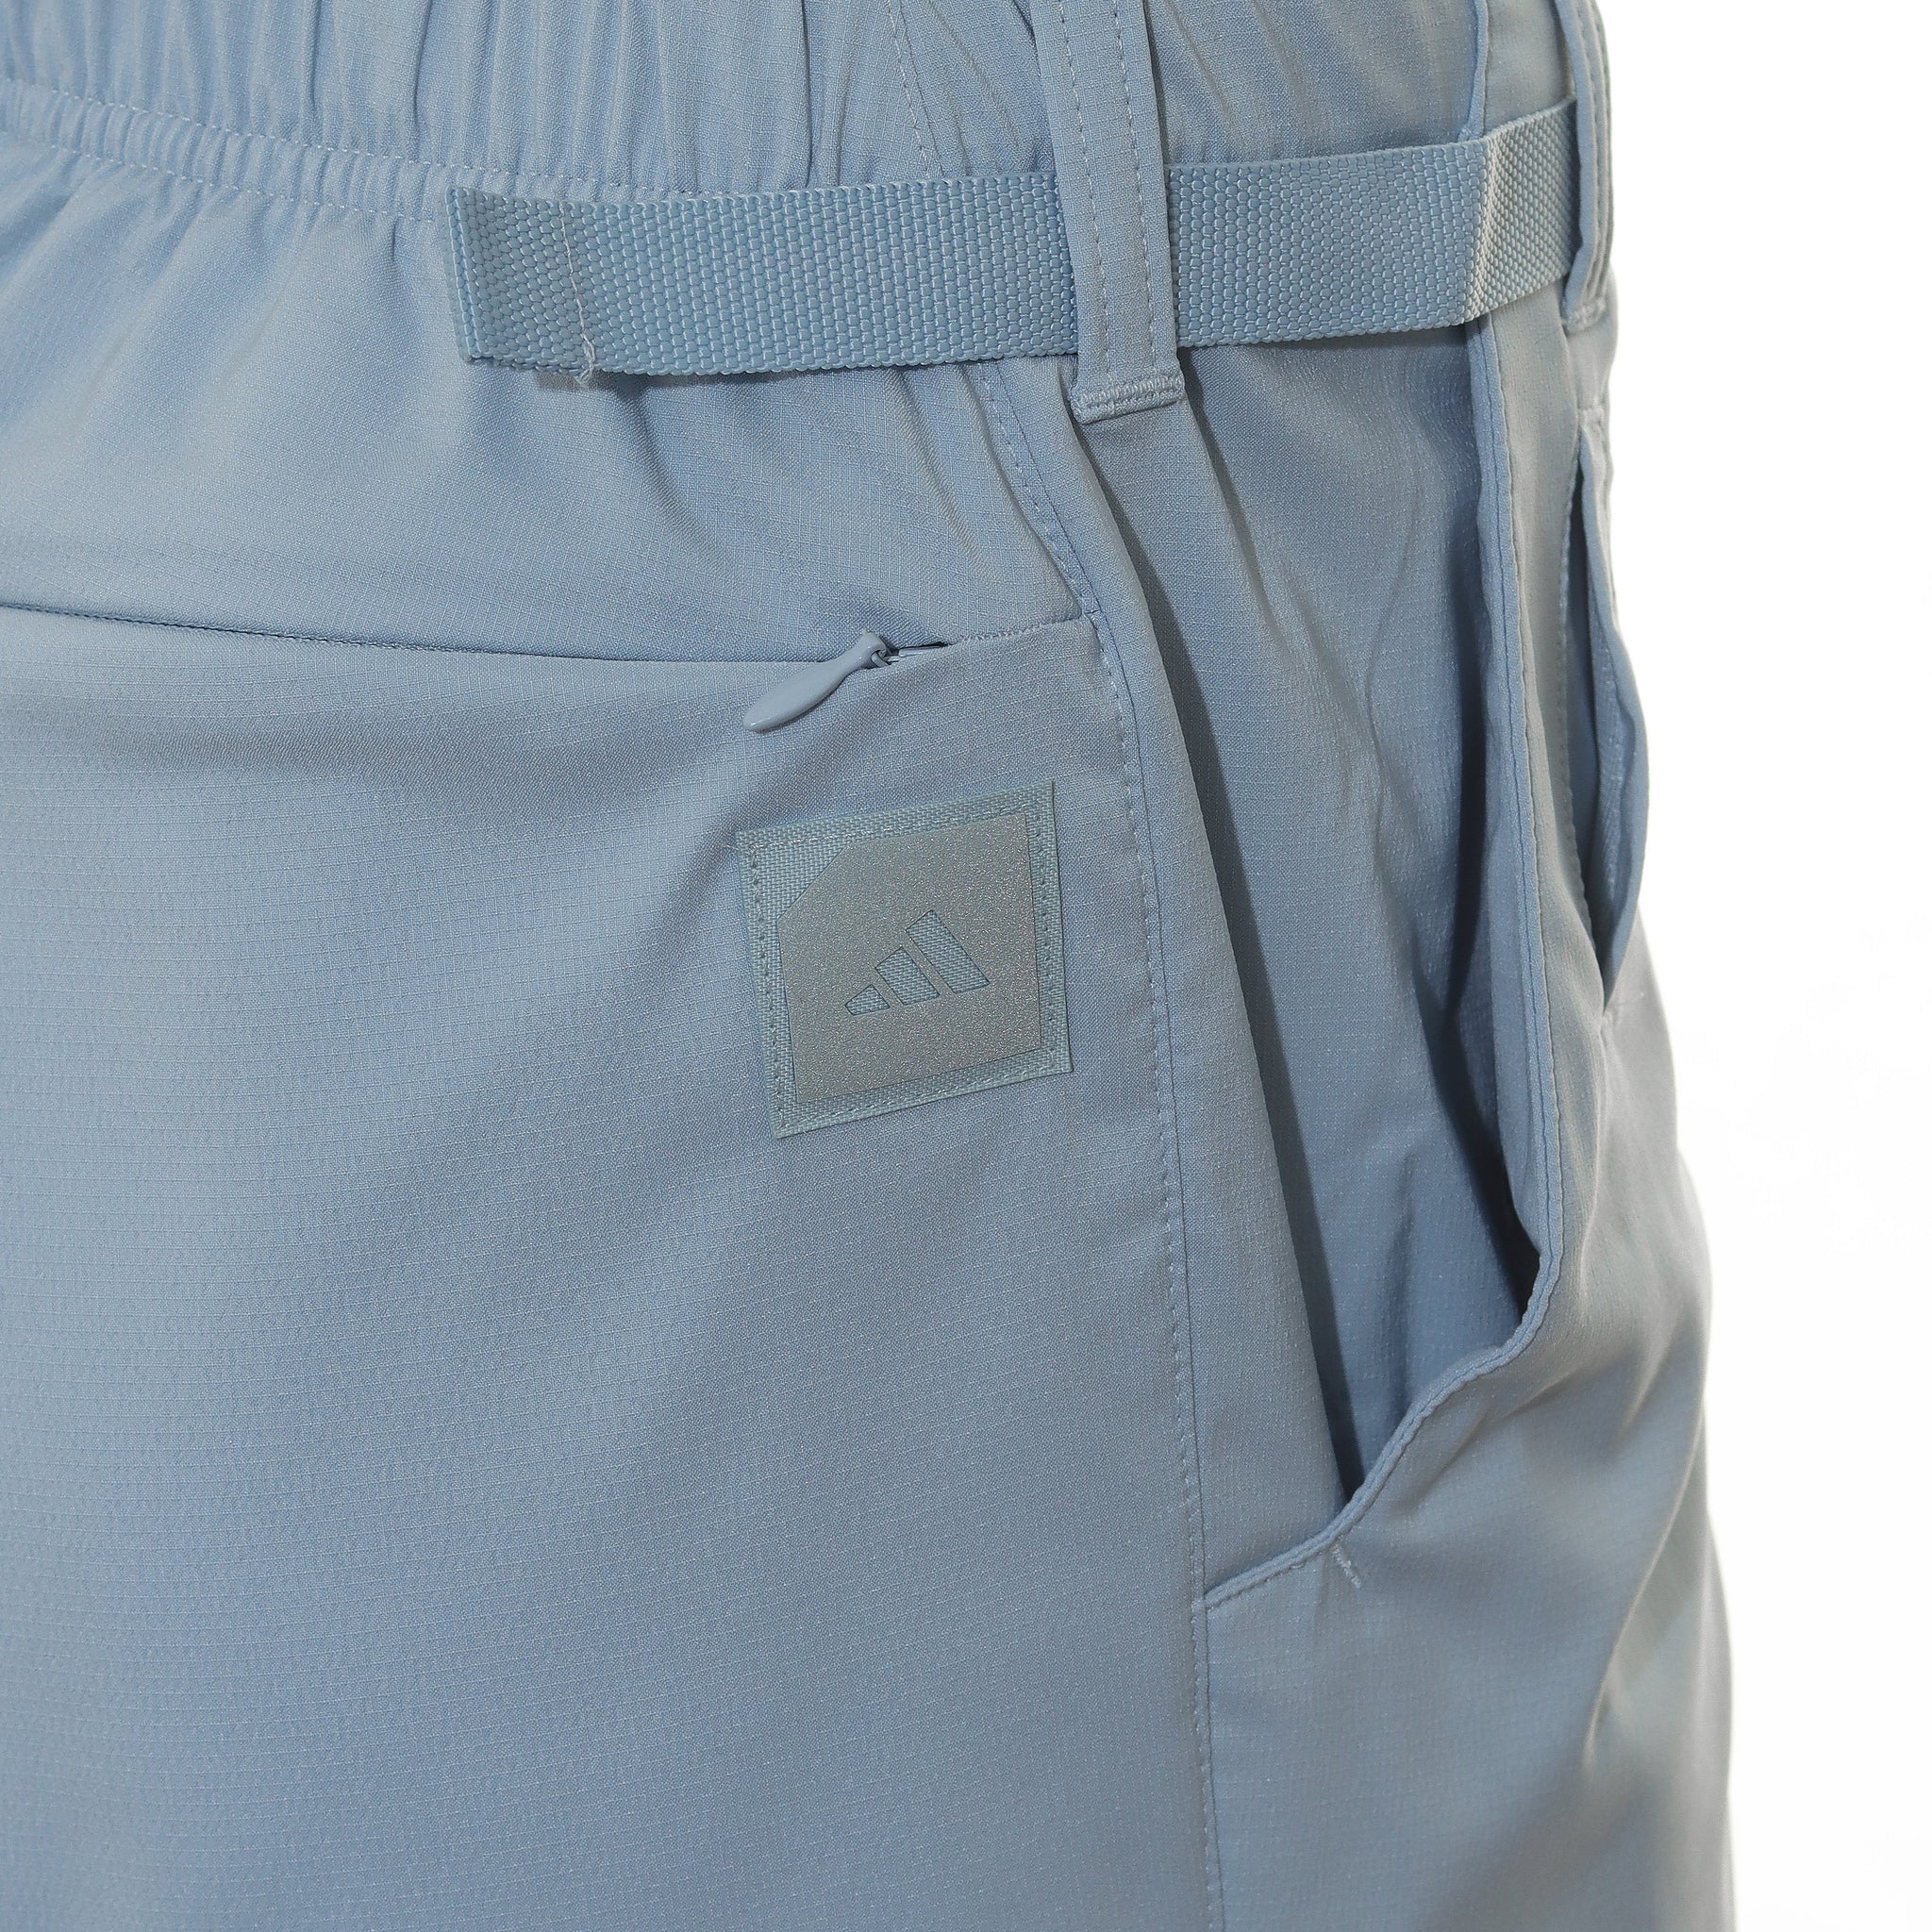 adidas-golf-adicross-heat-rdy-shorts-ib1973-wonder-blue